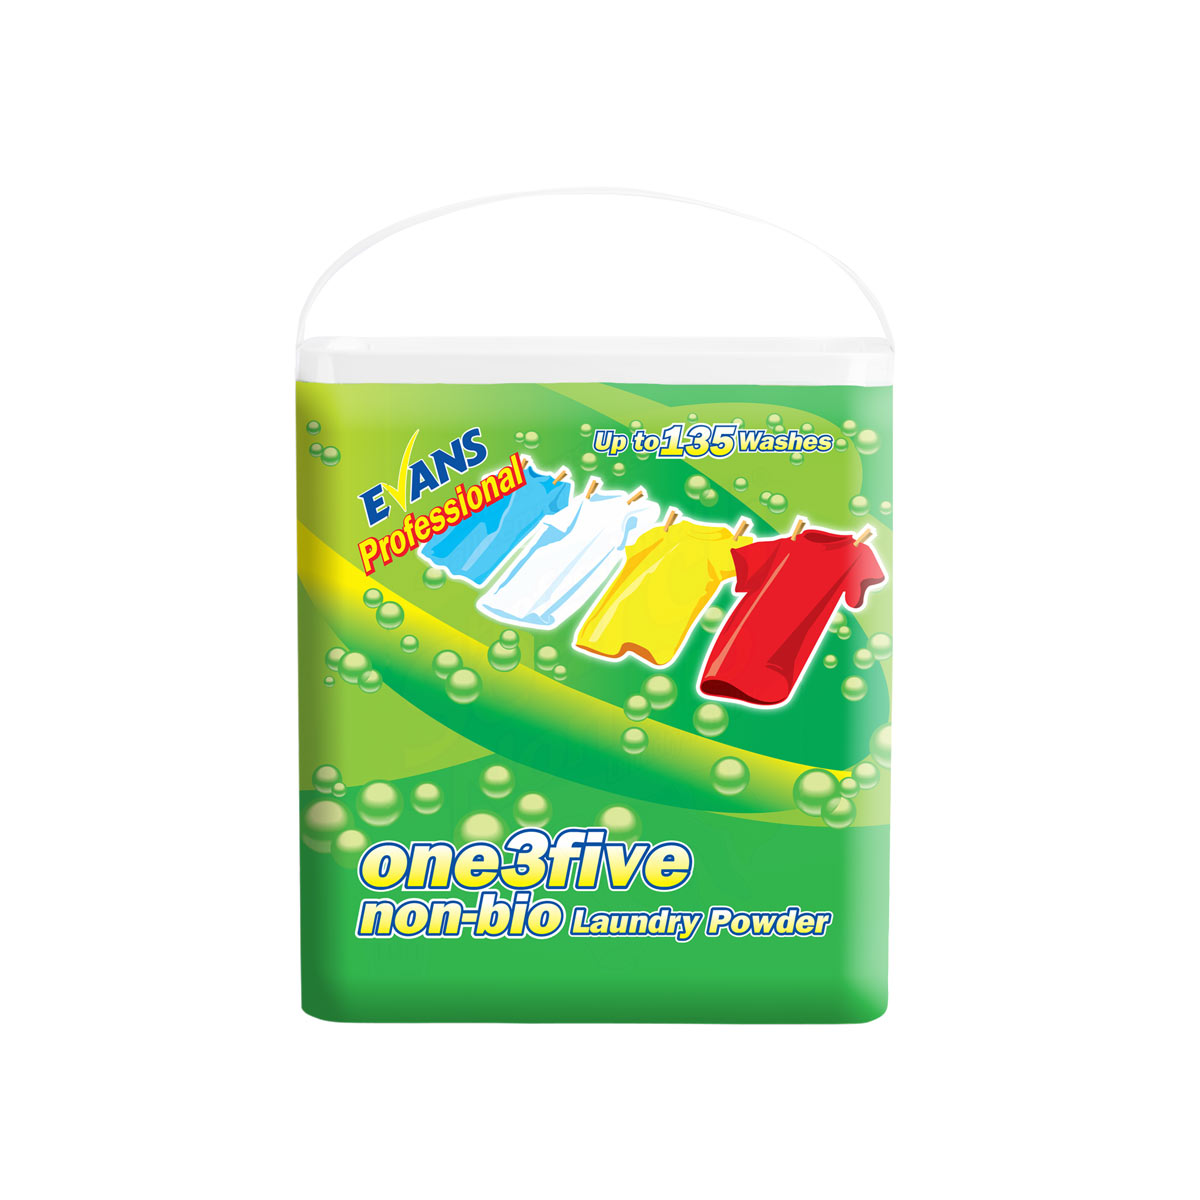 one3five Non-Bio Laundry Powder